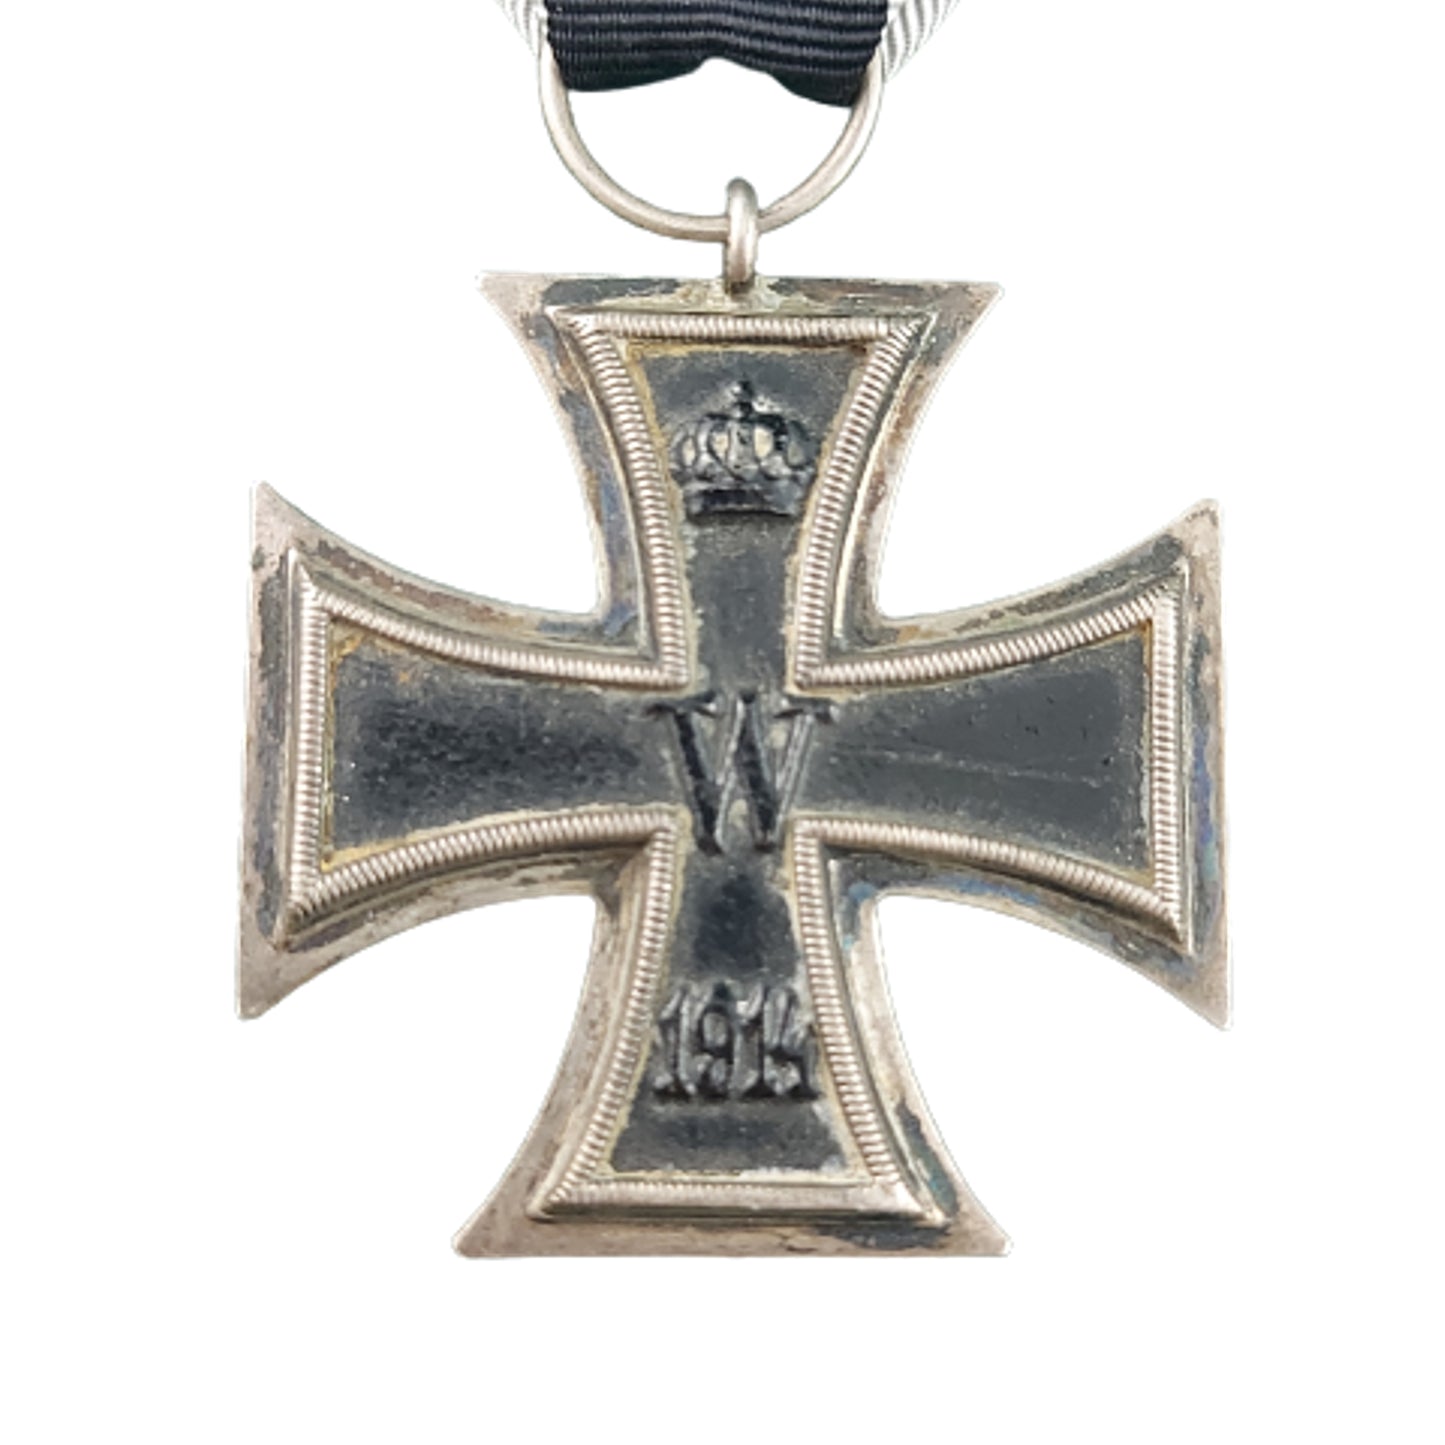 WW1 German Iron Cross 2nd Class -Maker marked